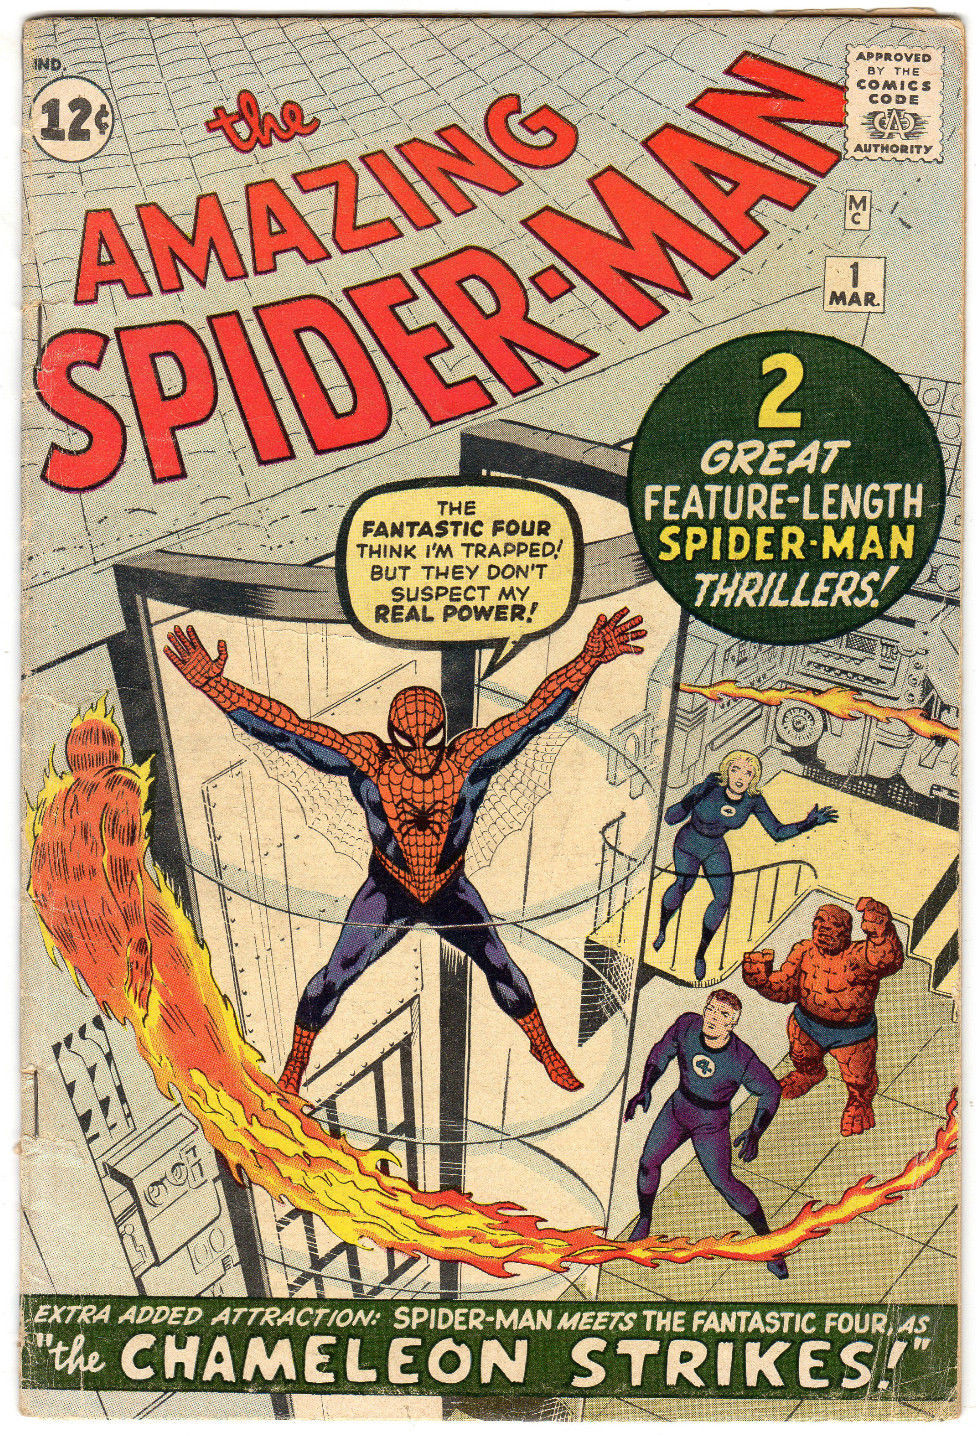 Record di vendita per il primo numero di “Amazing Spider-Man”